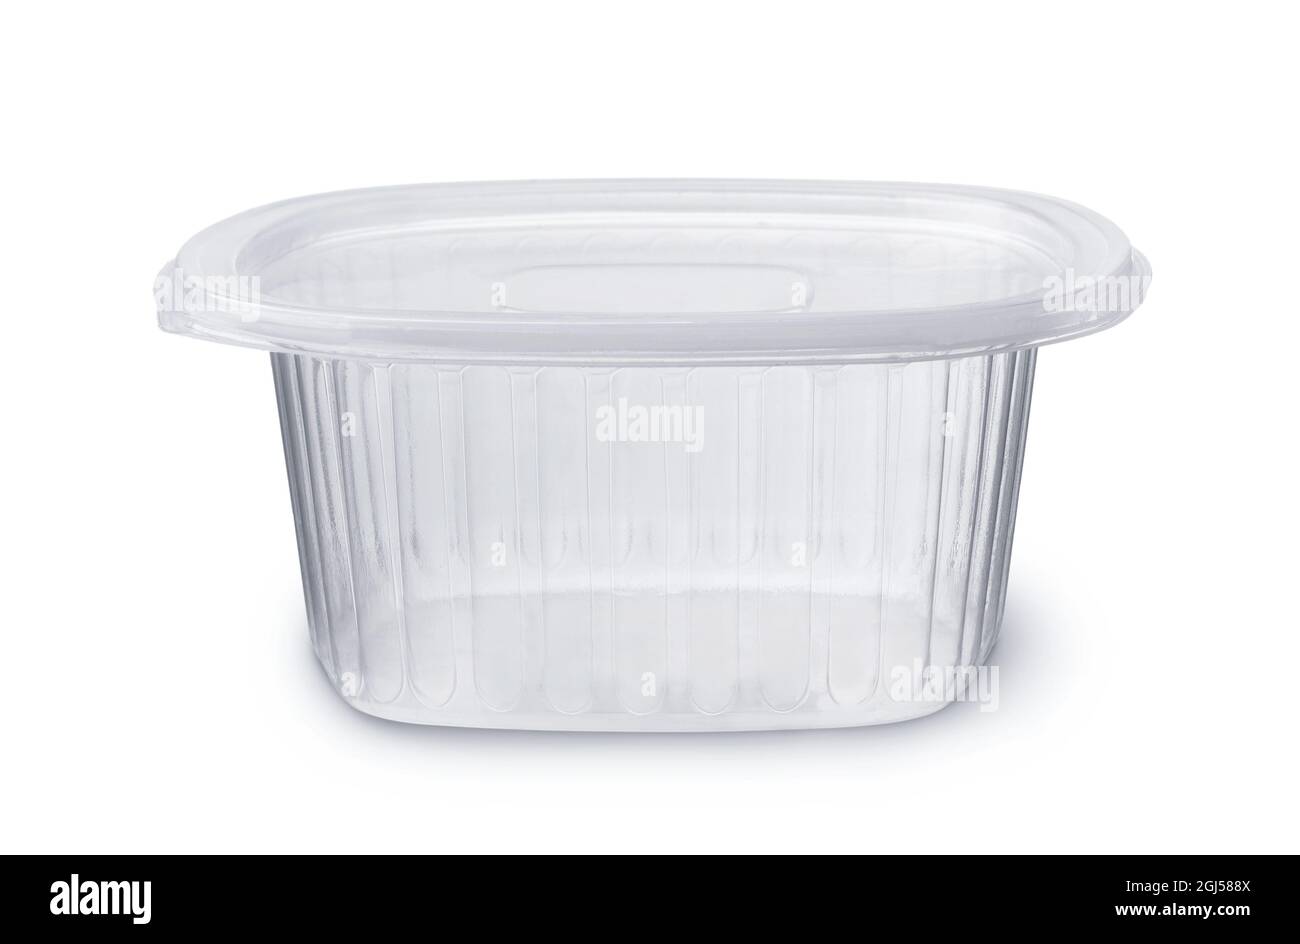 Vue avant de la boîte à nourriture jetable en plastique transparent vide isolée sur du blanc Banque D'Images